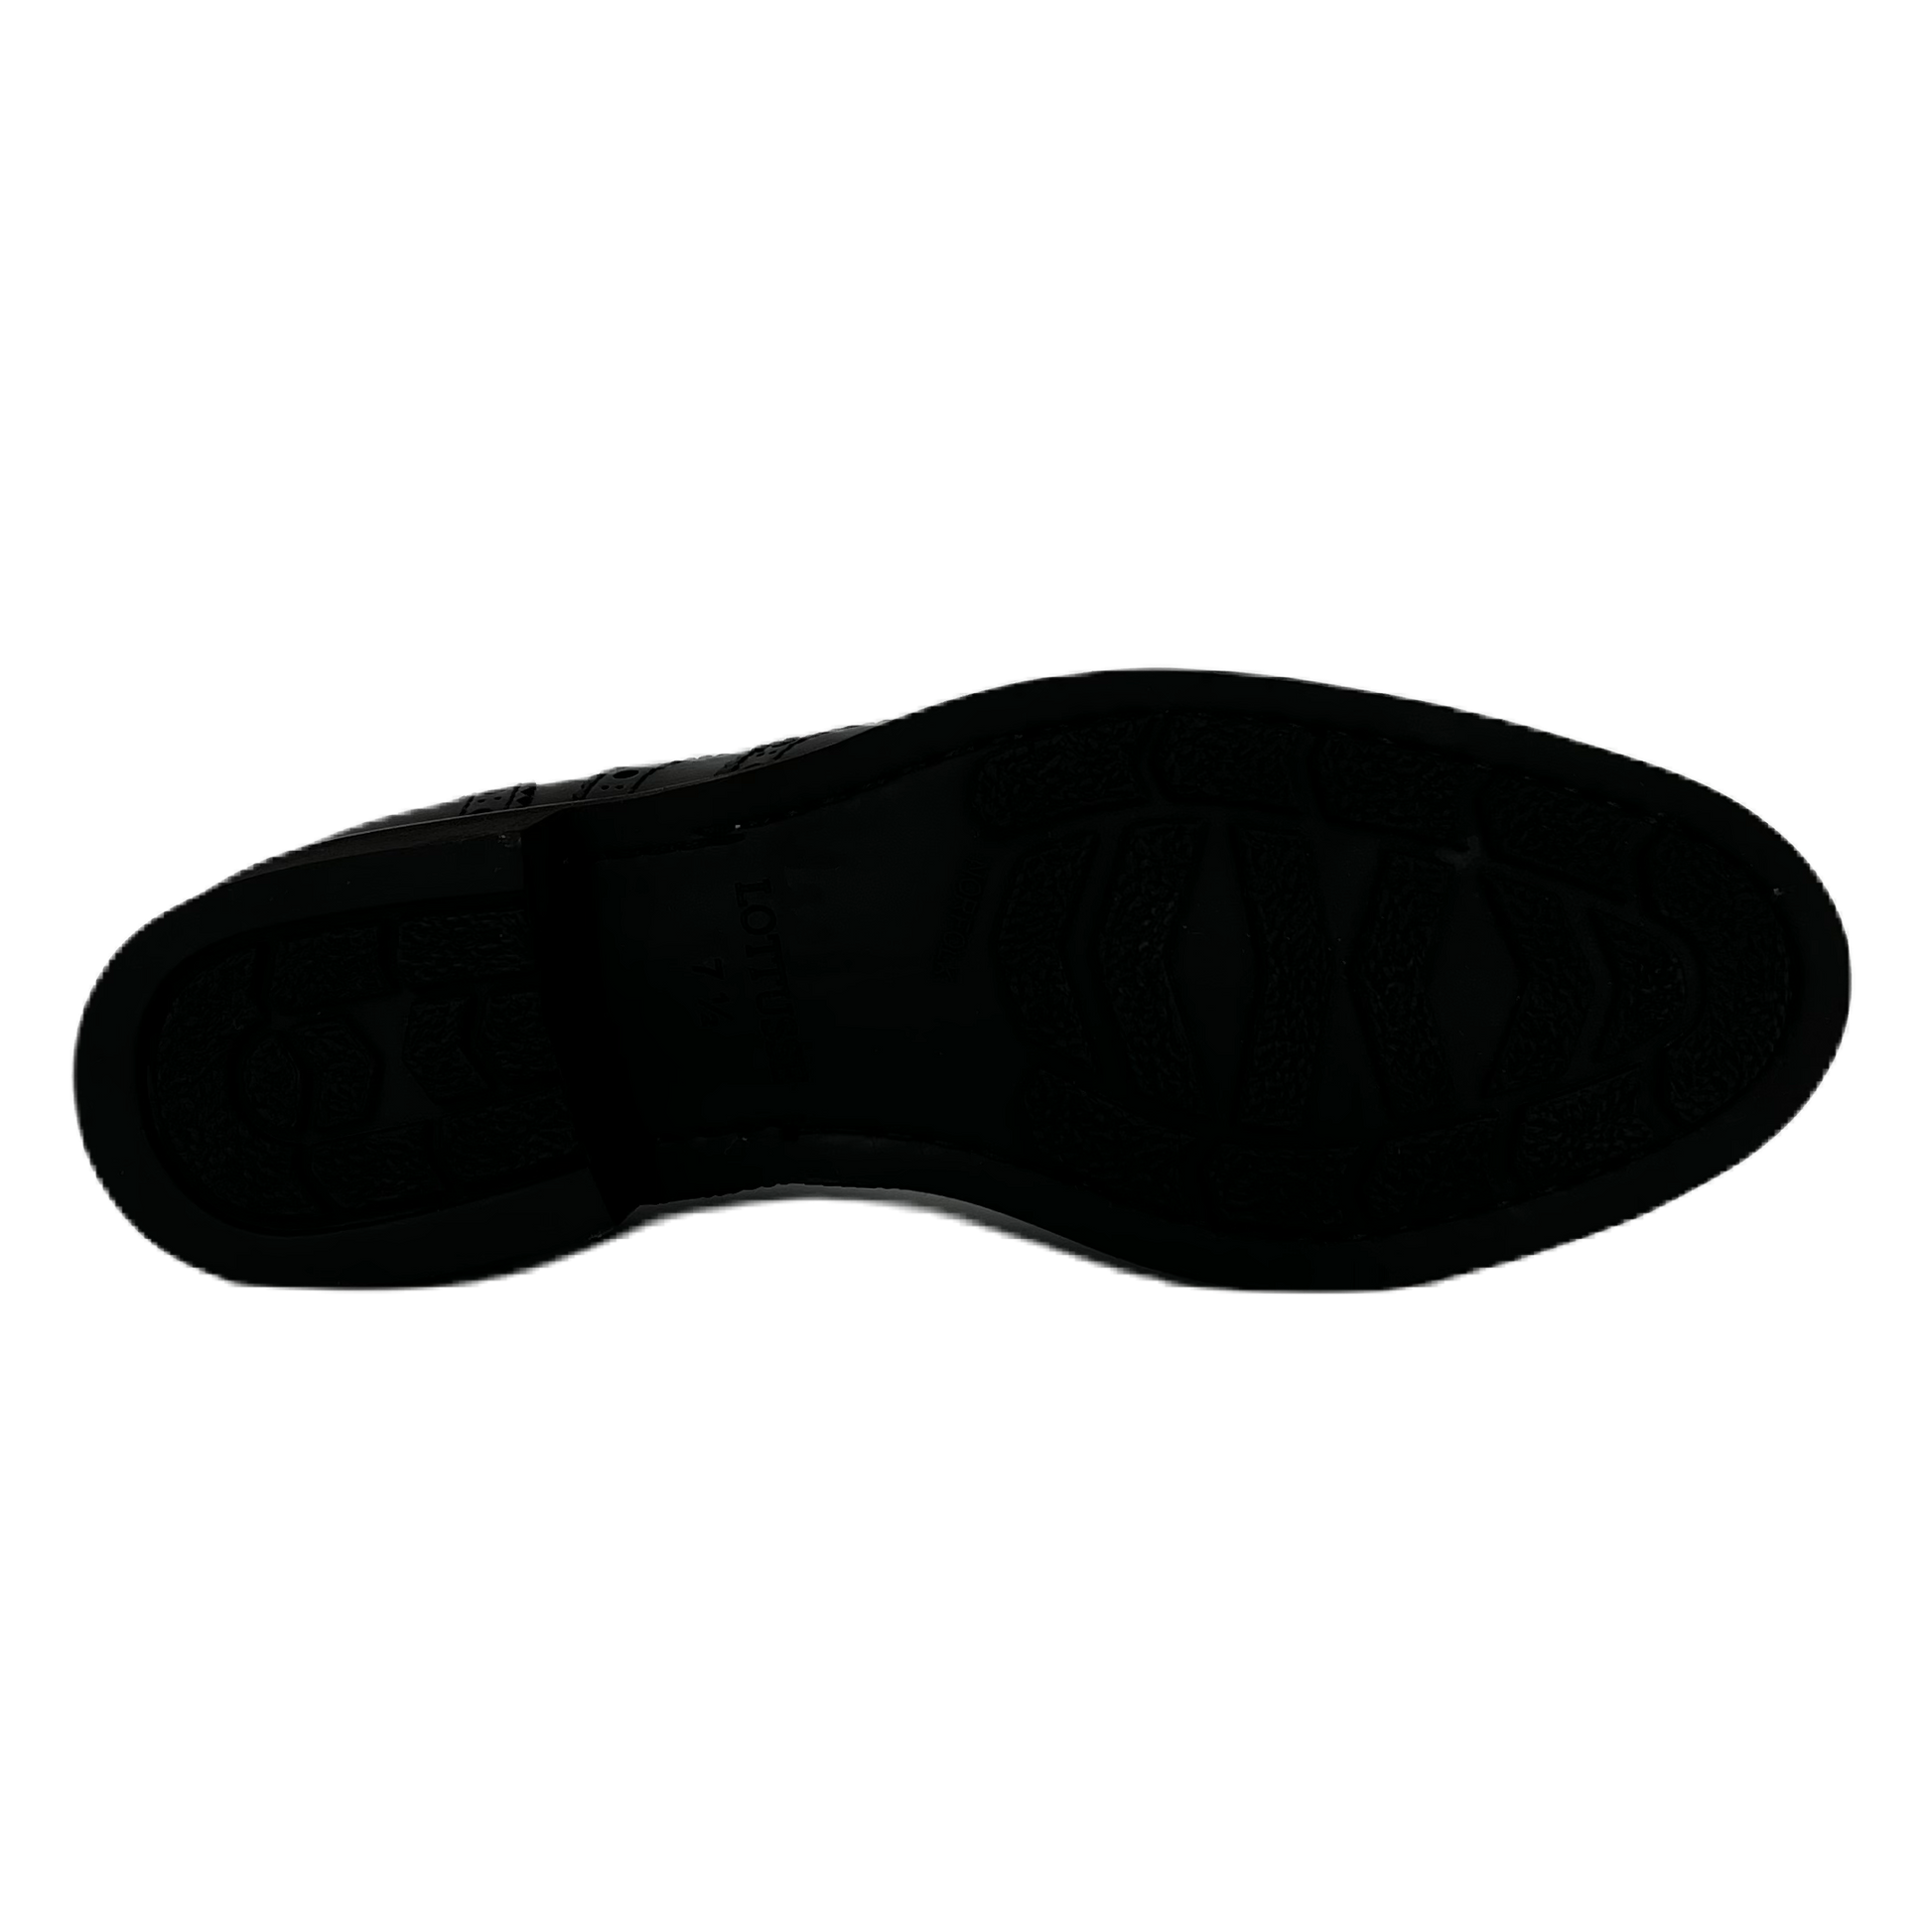 Zapatos Oxford De La Marca Lottusse Para Hombre Modelo Holborn En Color Negro